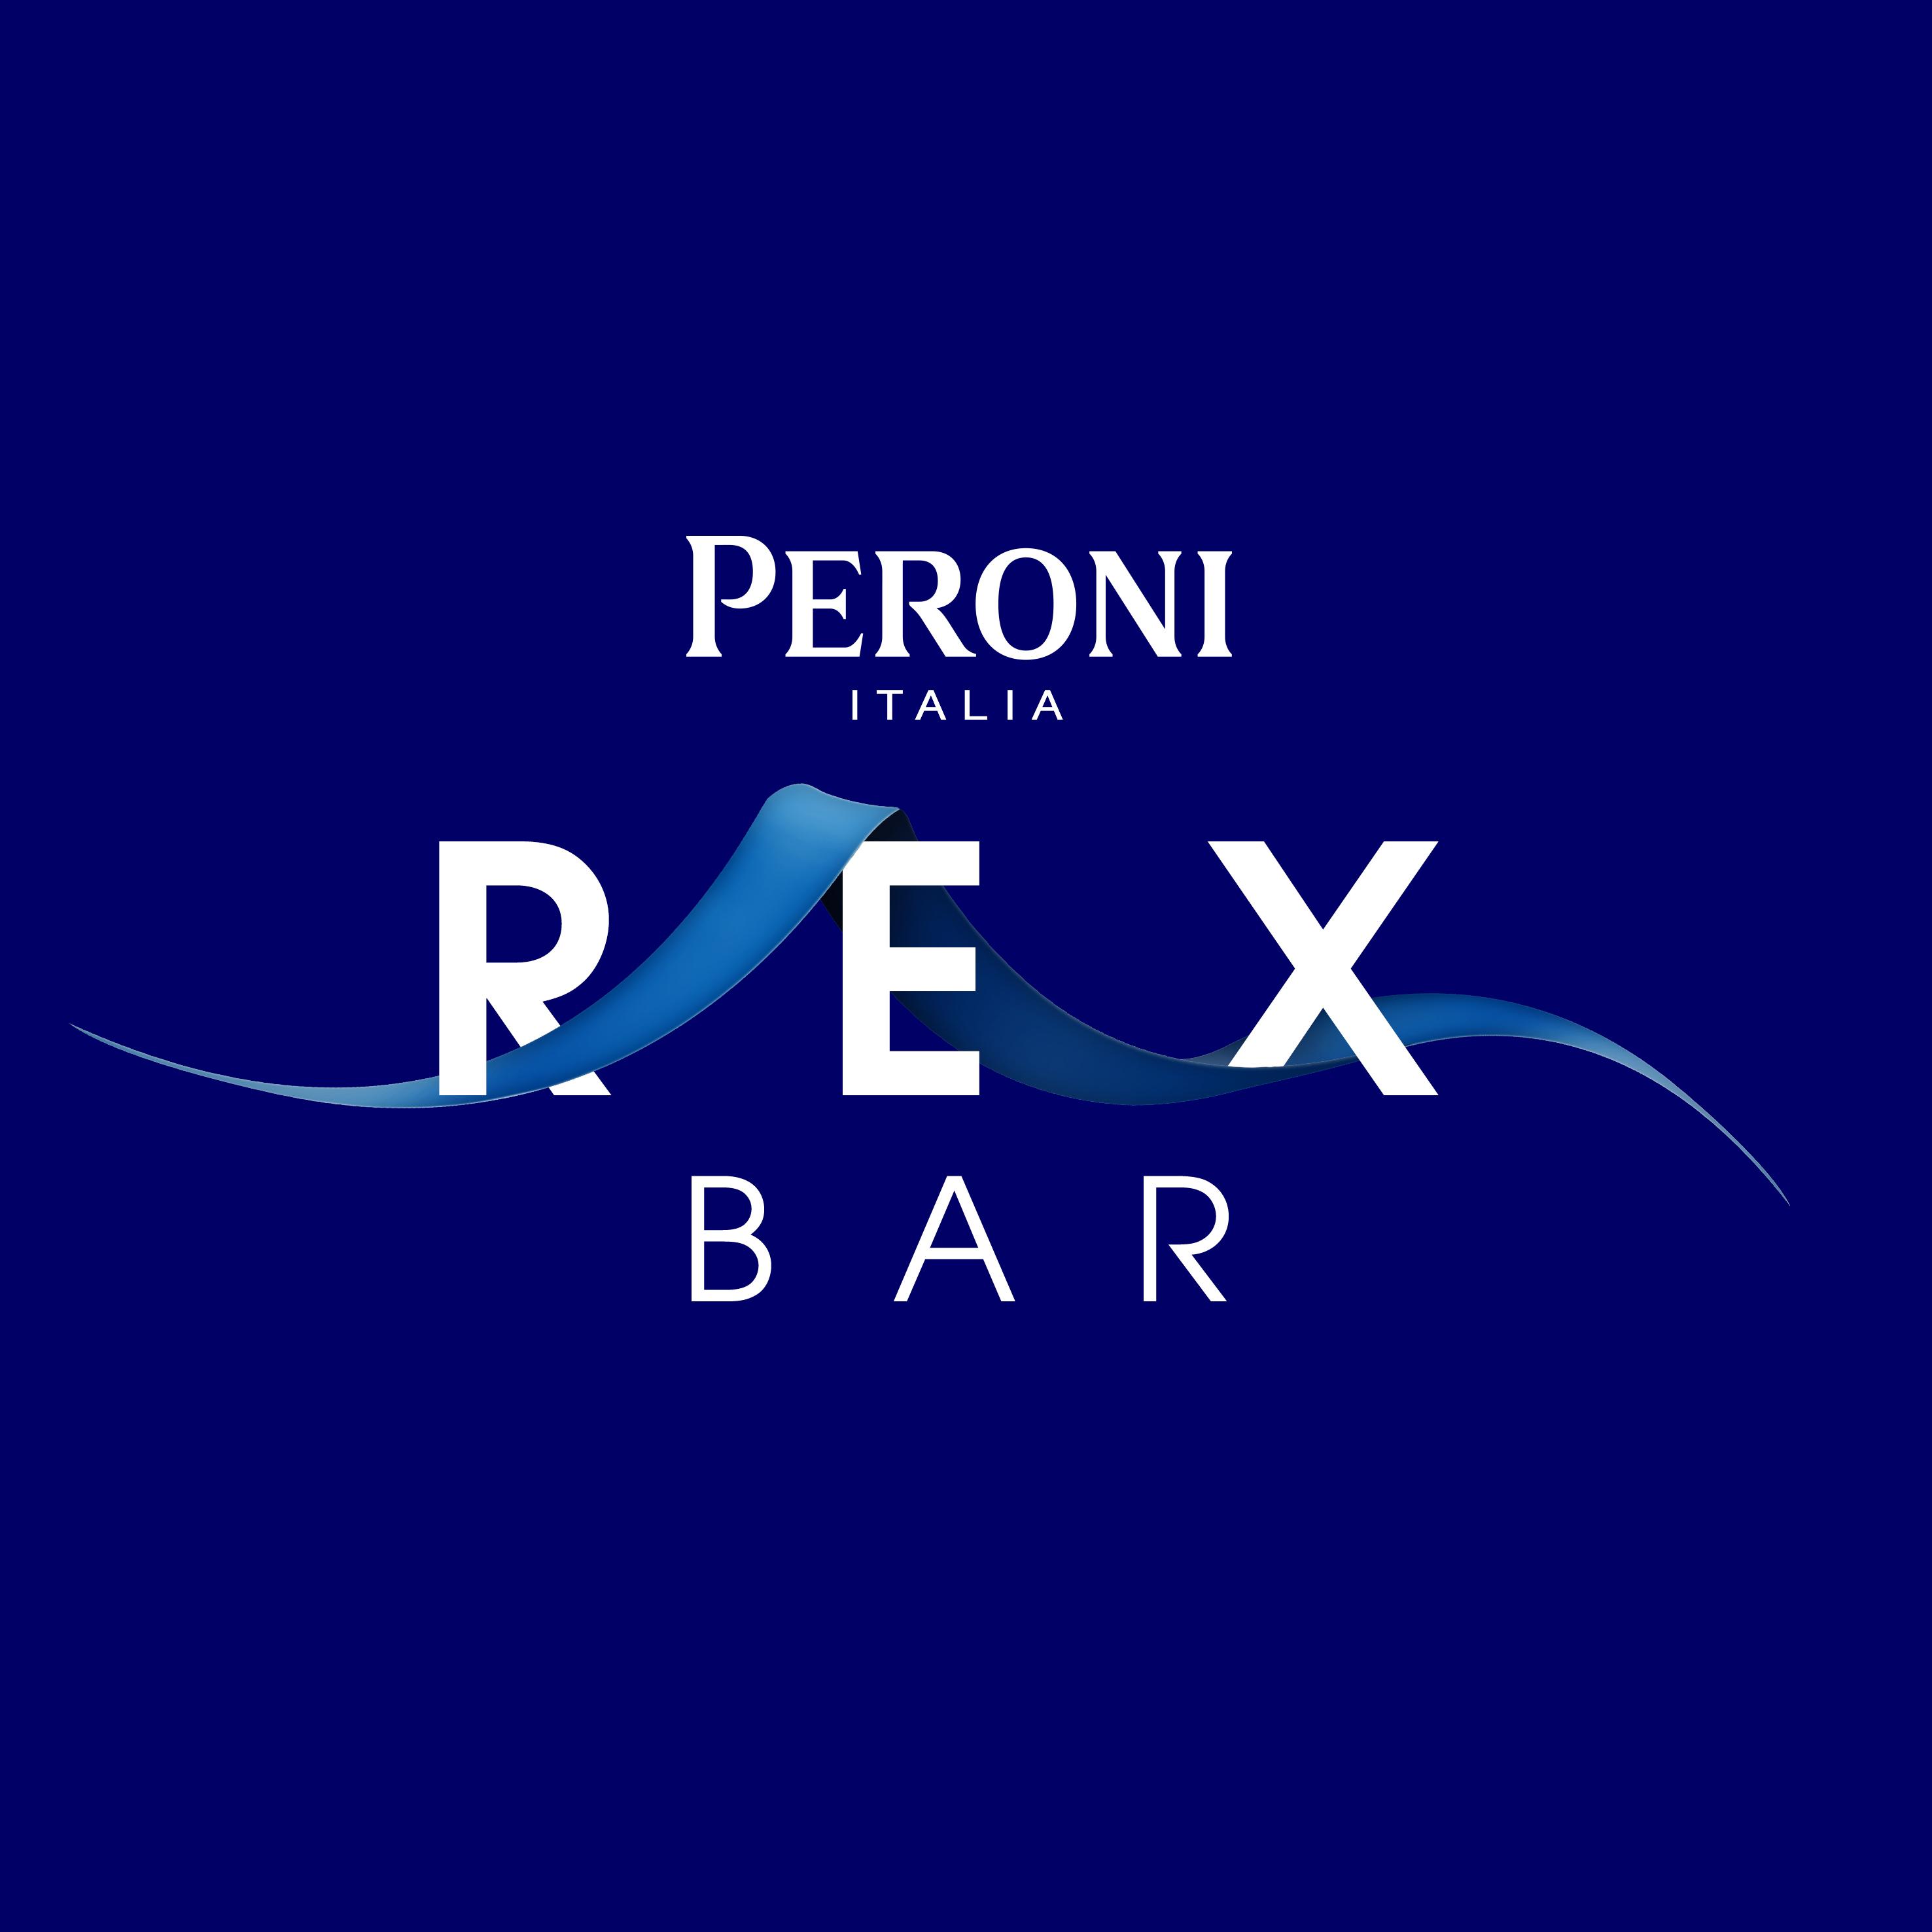 Rex Bar